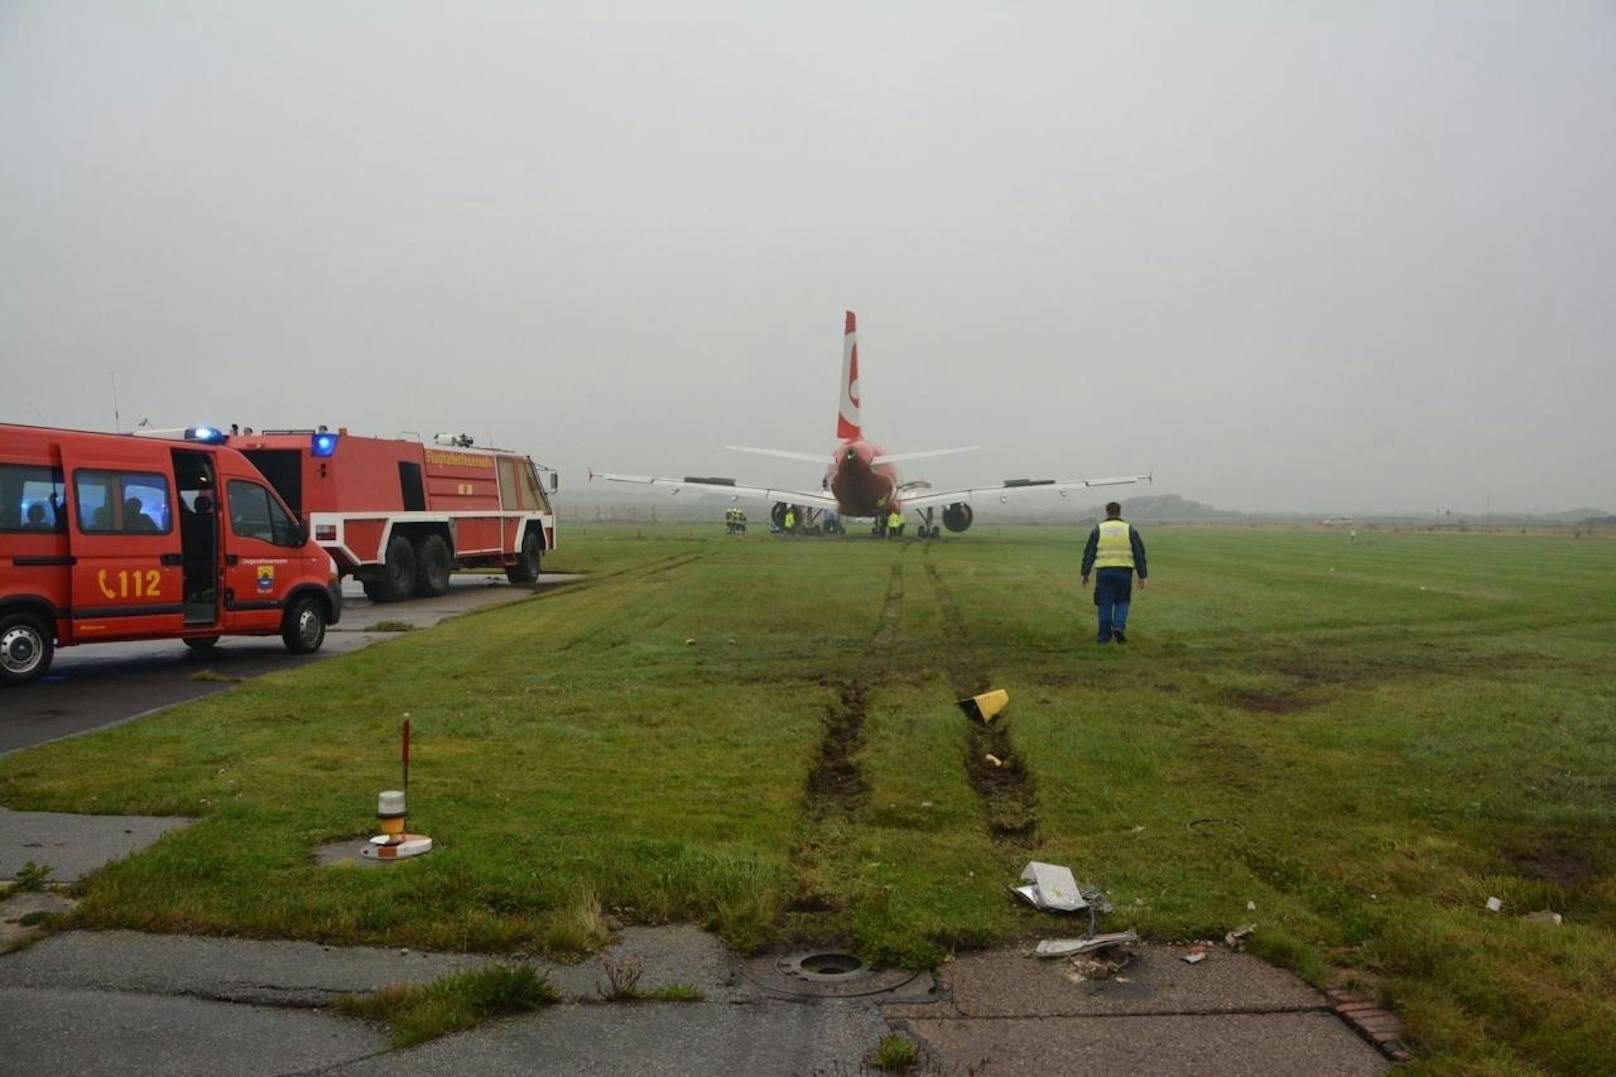 Am Samstagvormittag (30. September) ist es auf dem Flughafen der Insel Sylt zu einem gefährlichen Zwischenfall gekommen.